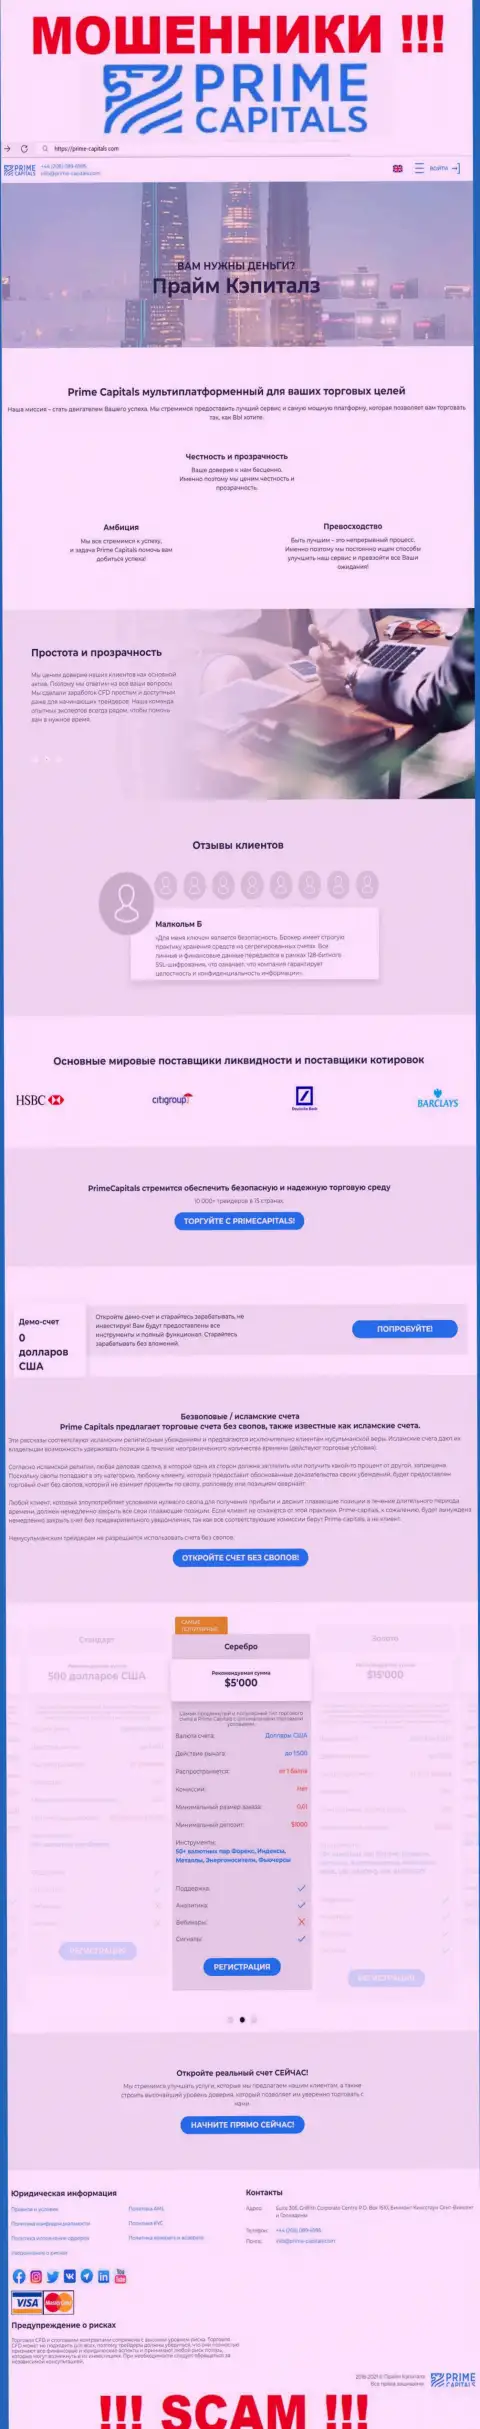 Официальный сайт мошенников Прайм Капиталс